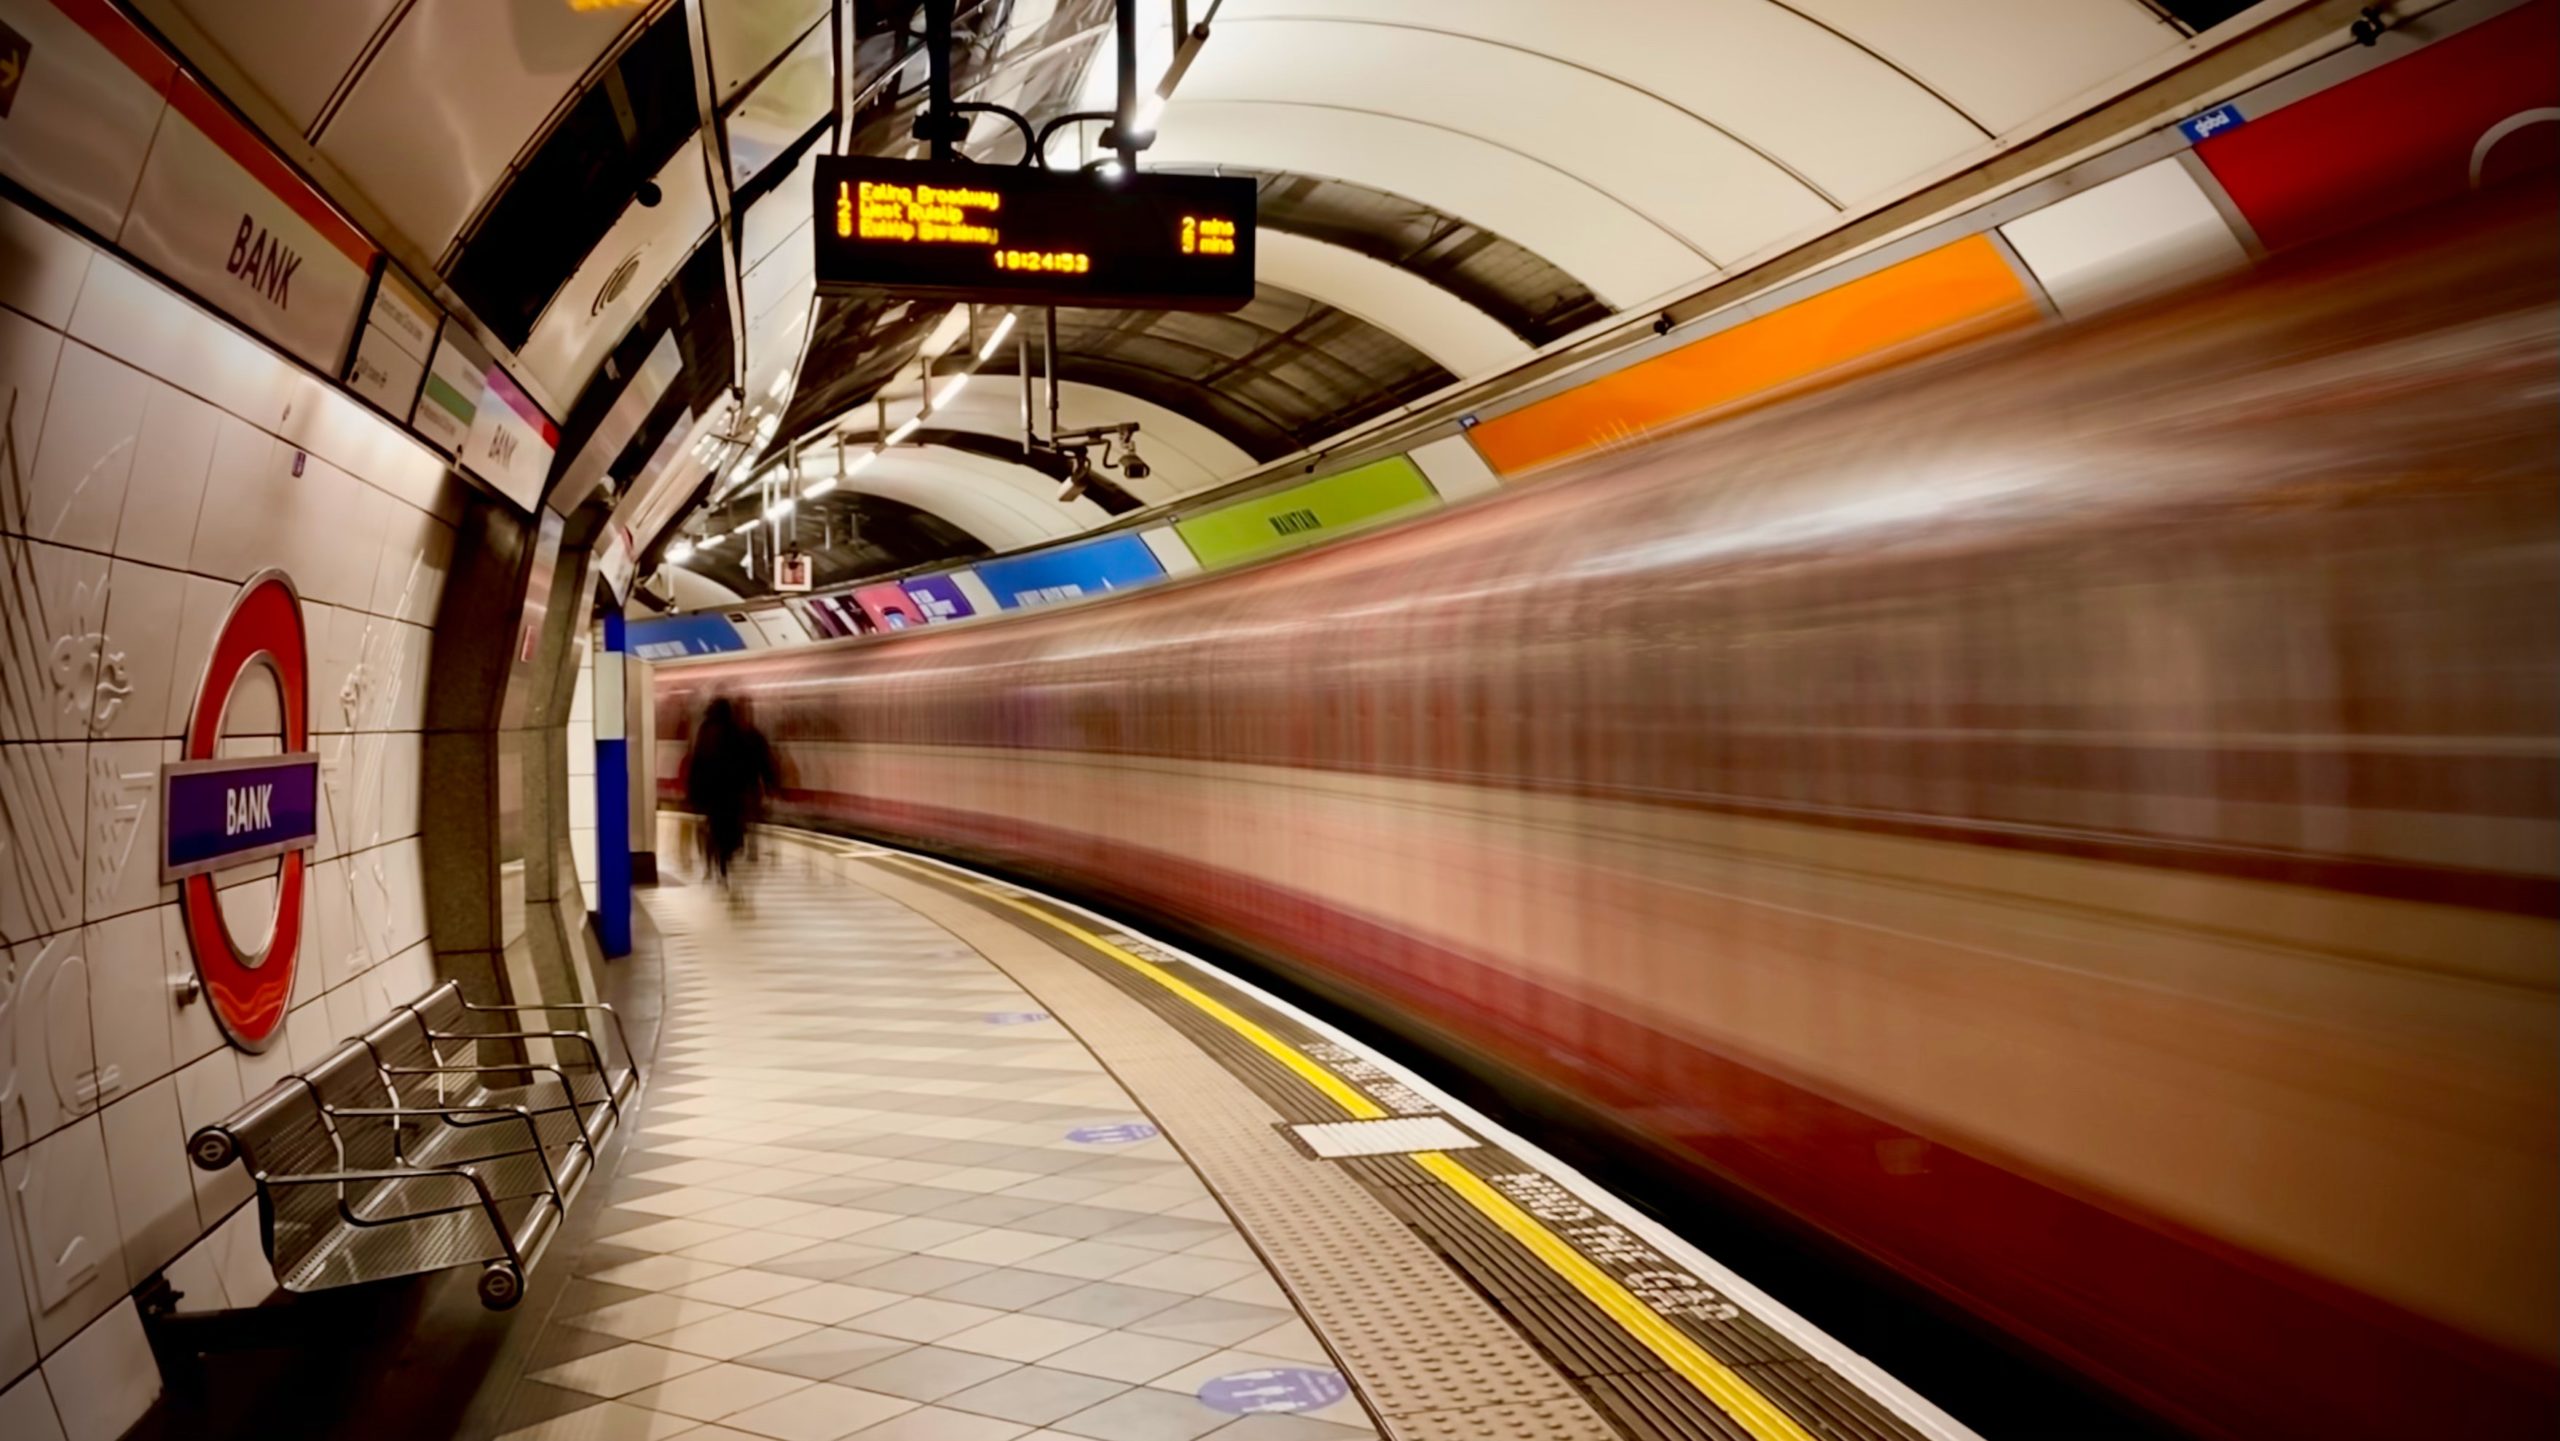 Noisy tube at bank London Underground station